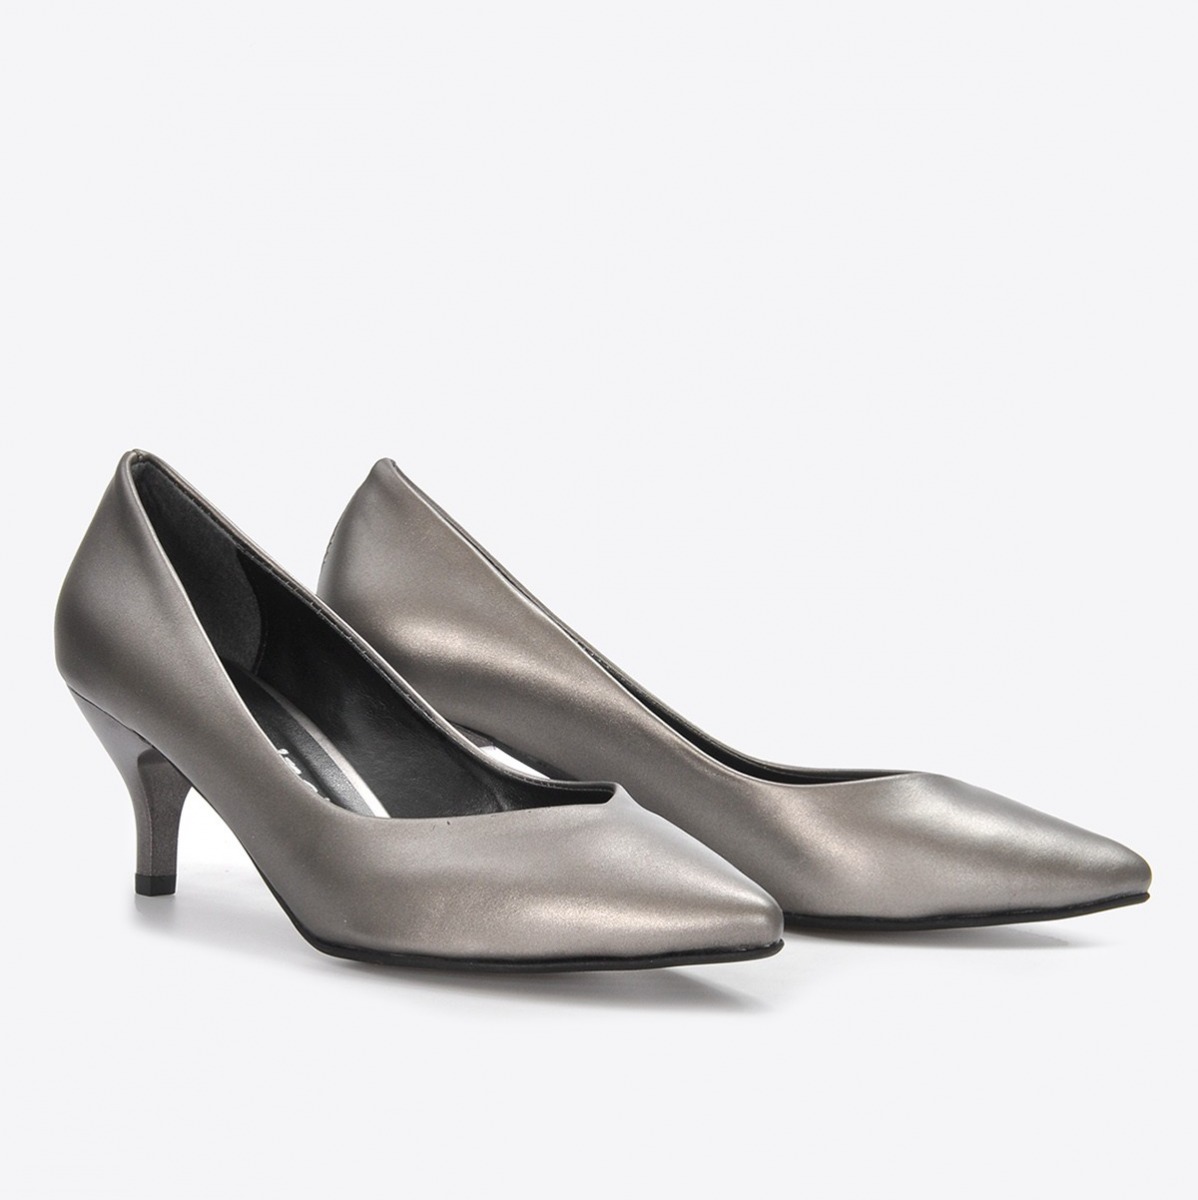 Flo Kadın Platin Klasik Topuklu Ayakkabı VZN21-001Y. 4